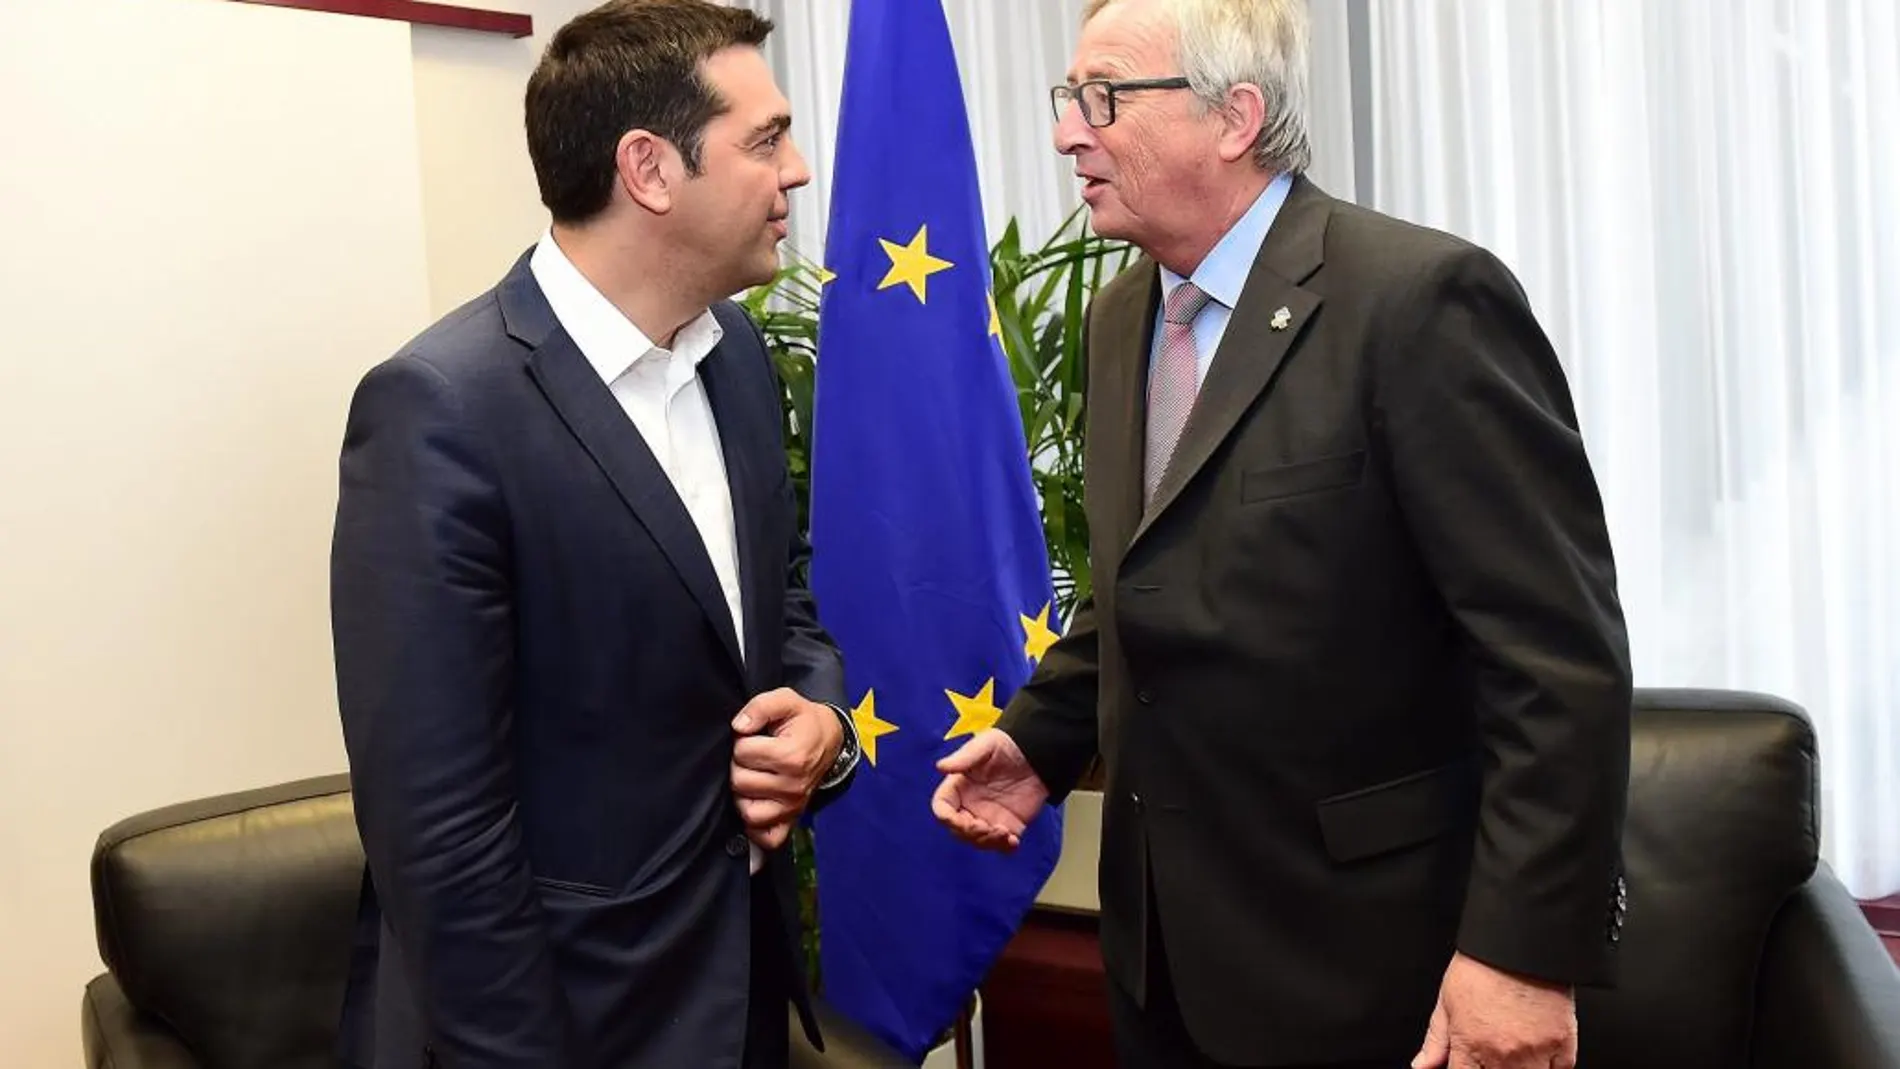 El primer ministro griego, Alexis Tsipras (izda), y el presidente de la Comisión Europea, Jean-Claude Juncker, se reúnen en el marco de la Cumbre de los líderes de la Unión Europea (UE) y la Comunidad de Estados Latinoamericanos y Caribeños (Celac) celebrada en Bruselas (Bélgica) hoy, jueves 11 de junio de 2015.